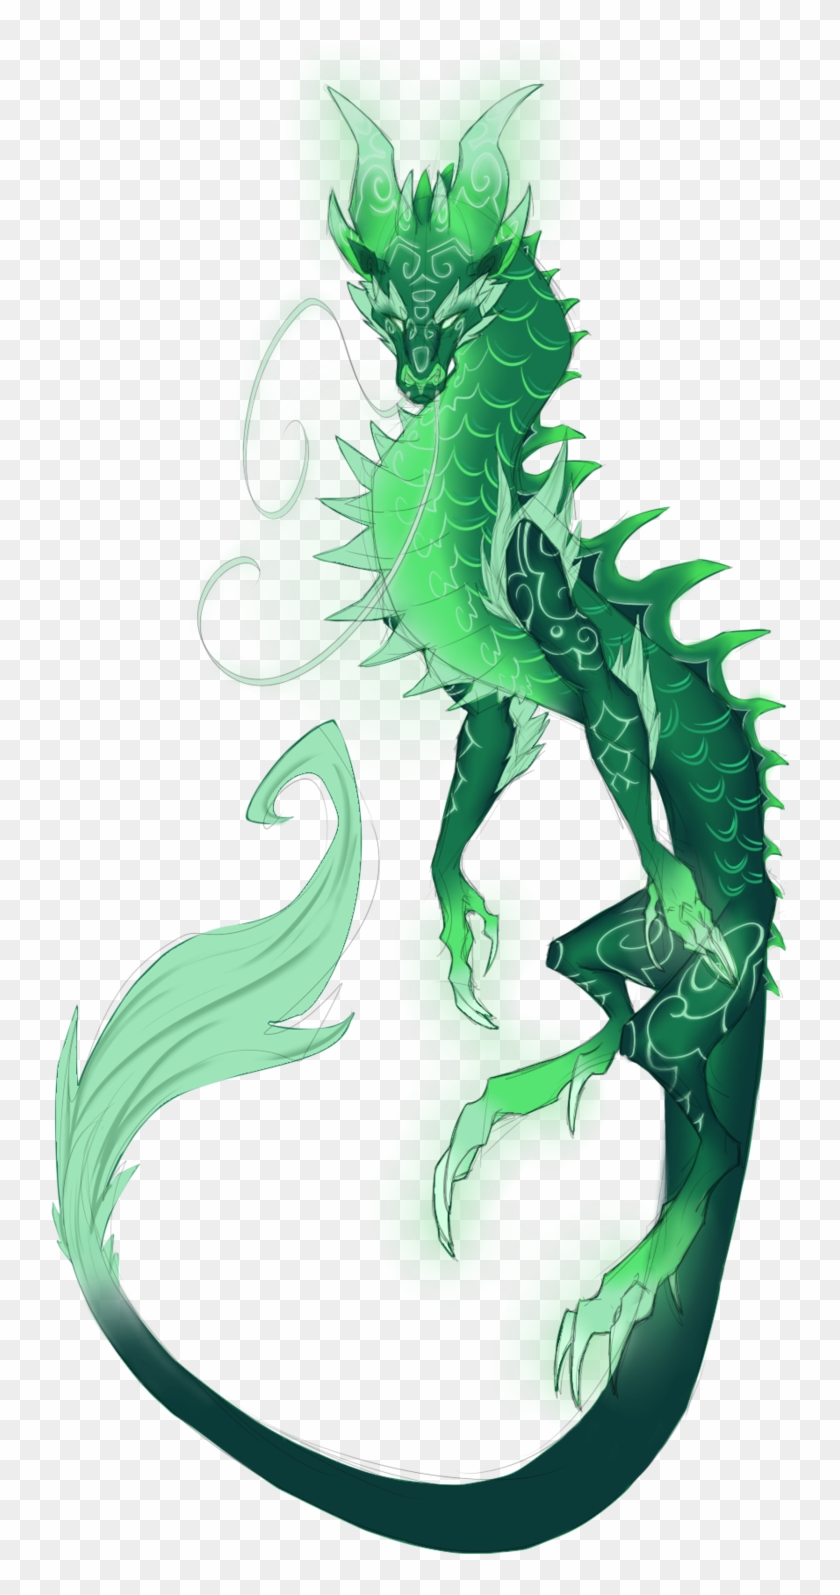 Yu'lon Is A Pretty Dragon - Green Dragon Fanart #700562